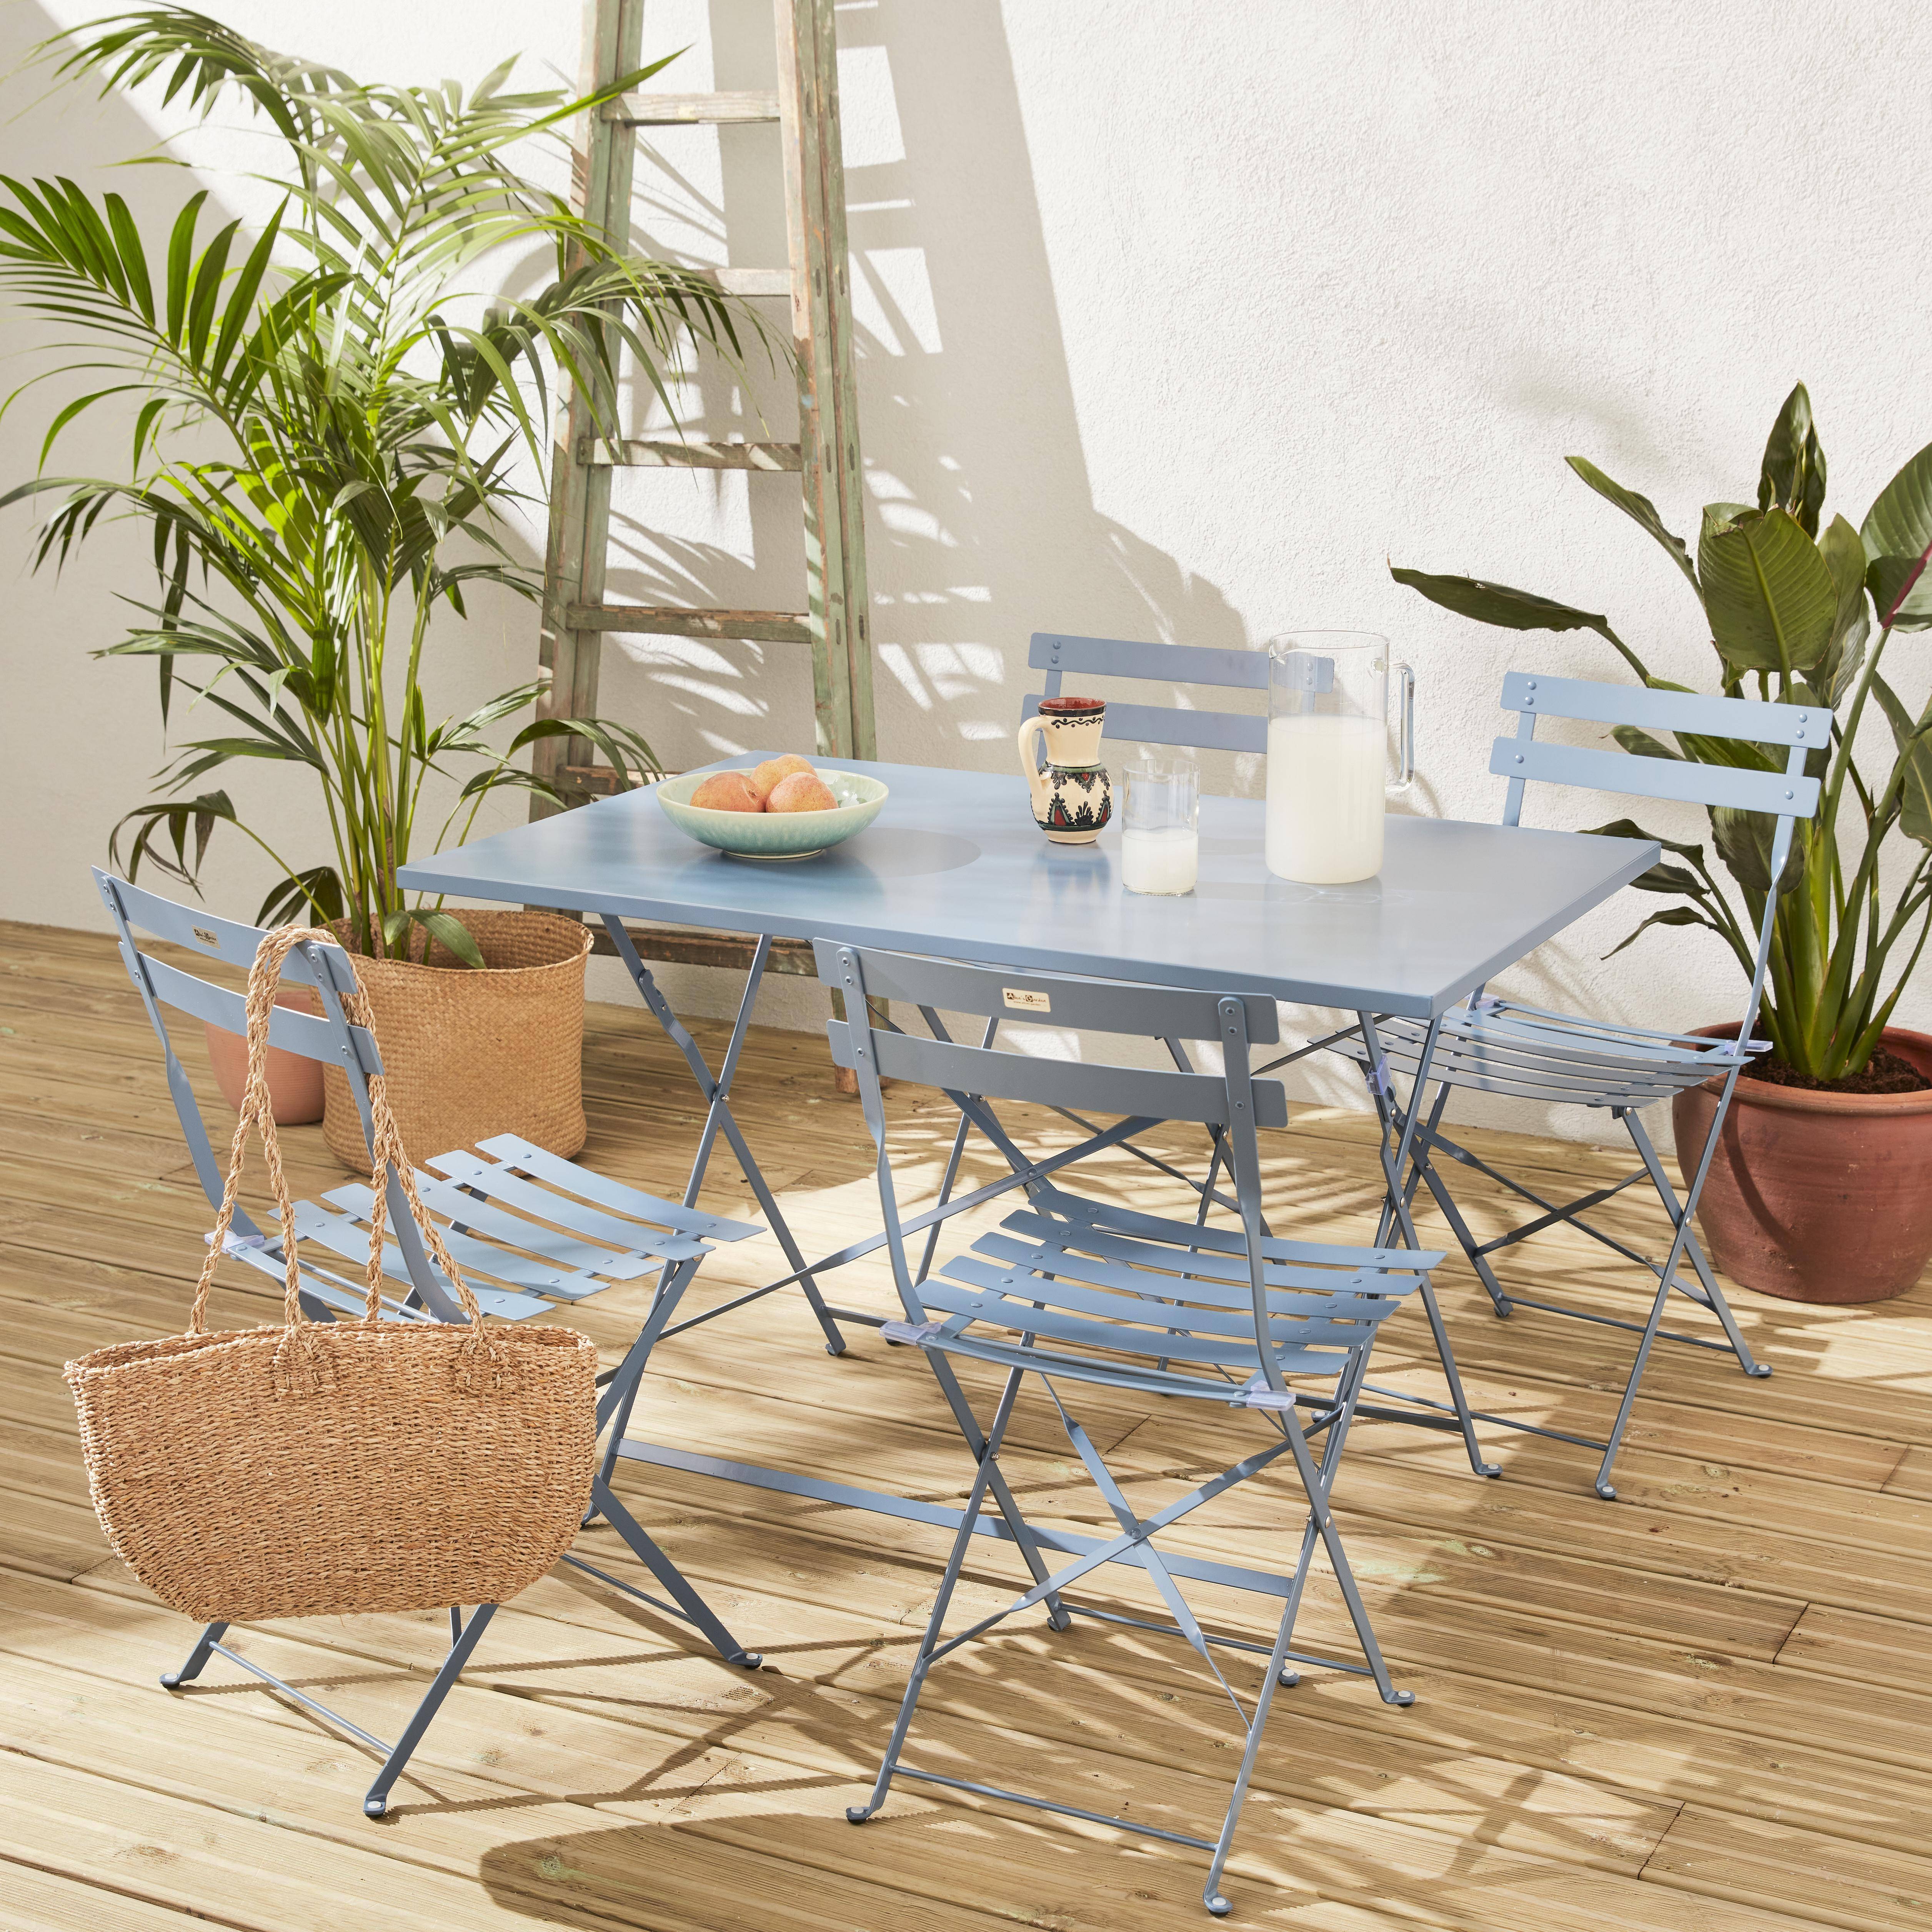 Klappbare Bistro-Gartenmöbel - Graublau, rechteckig Emilia - 110 x 70 cm großer Tisch mit vier Klappstühlen aus pulverbeschichtetem Stahl Photo1